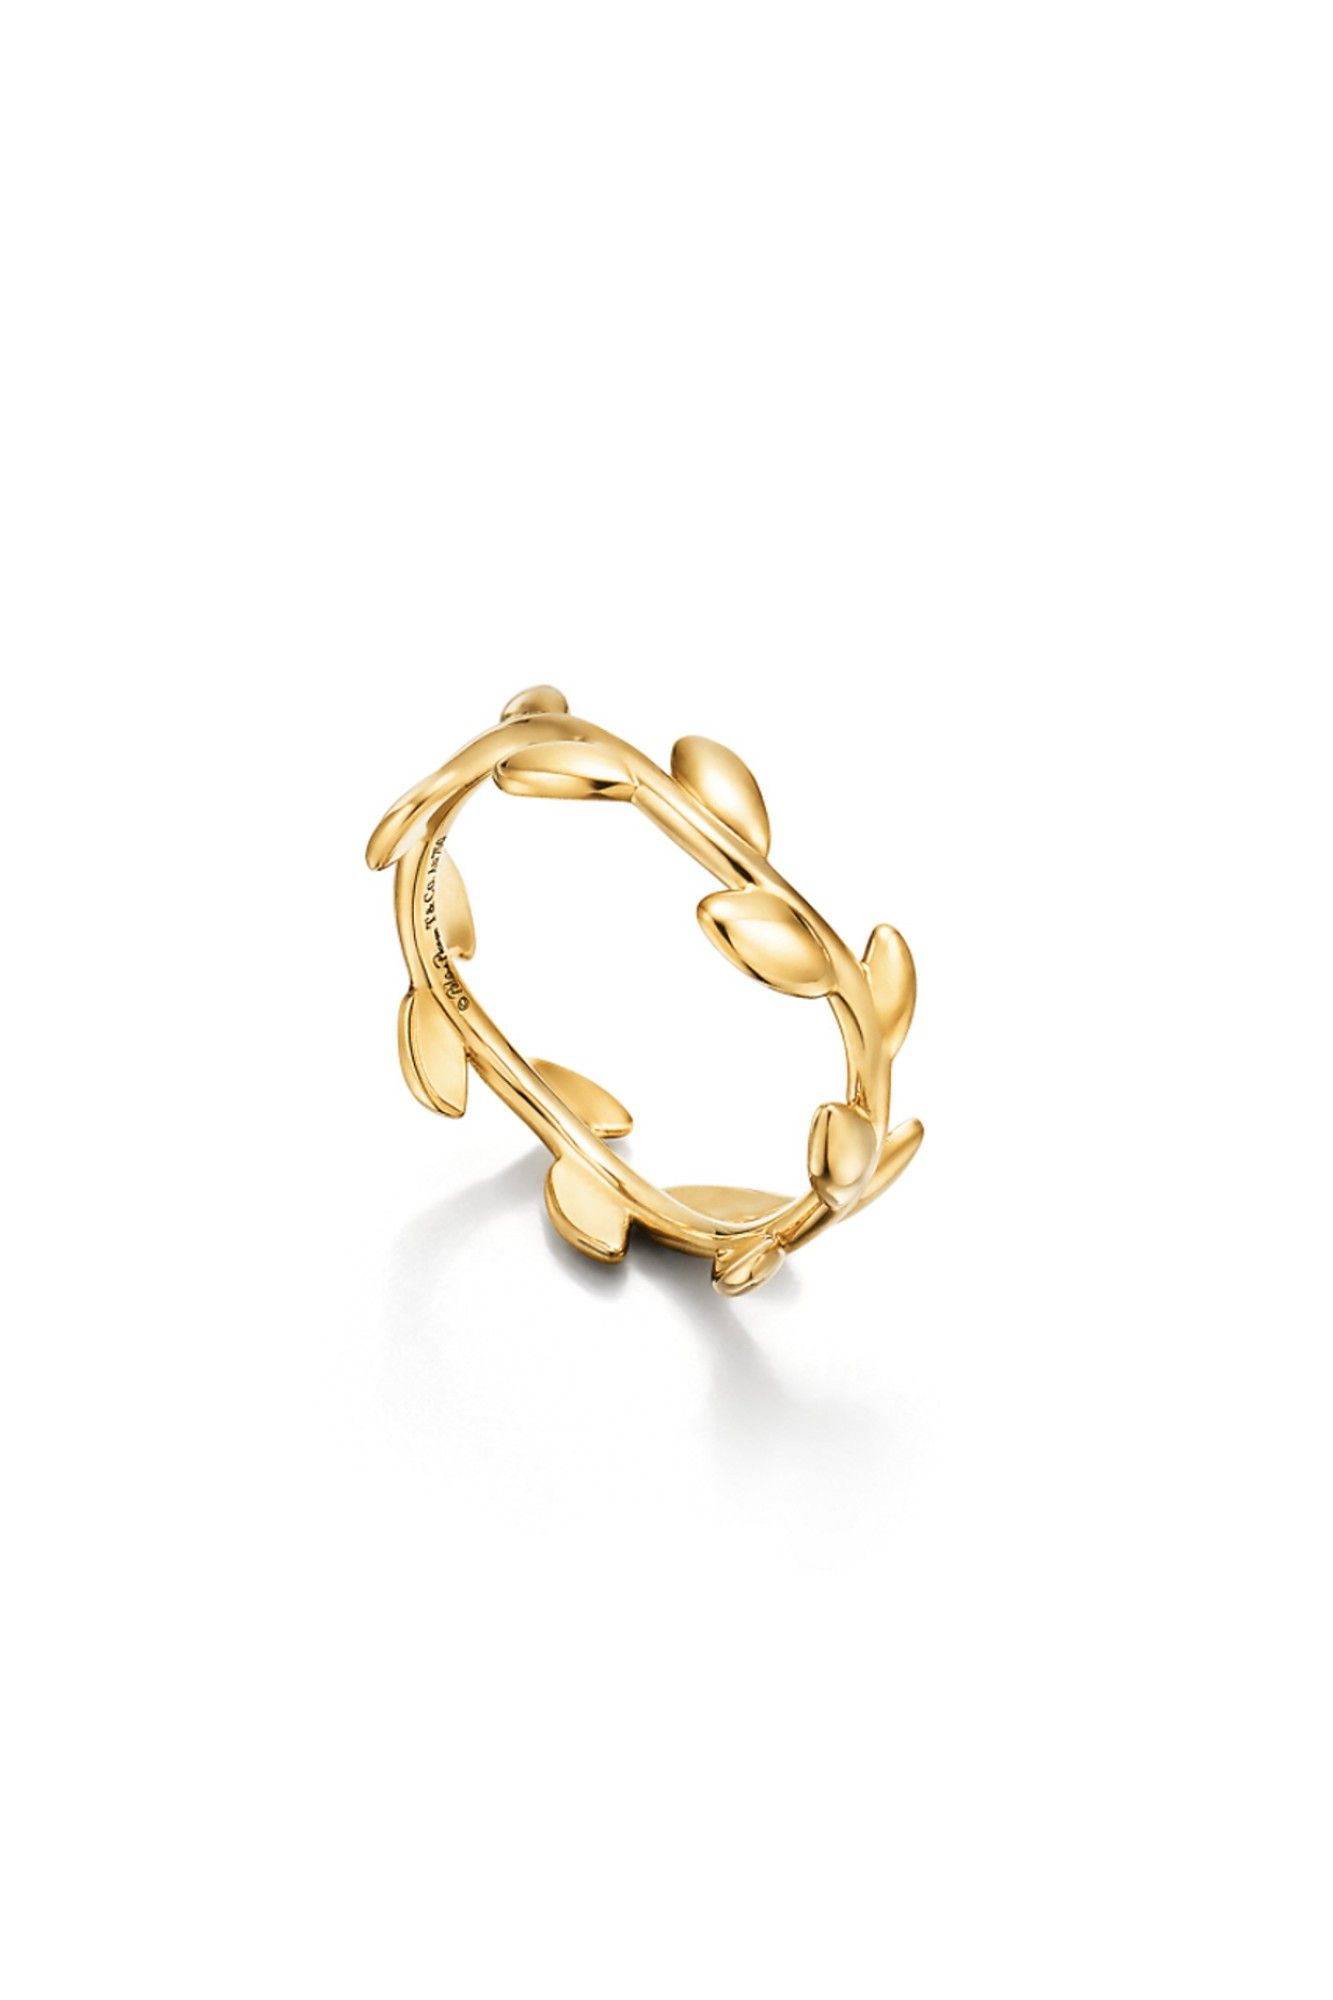 20 anillos de oro de mujer bonitos, elegantes y sencillos